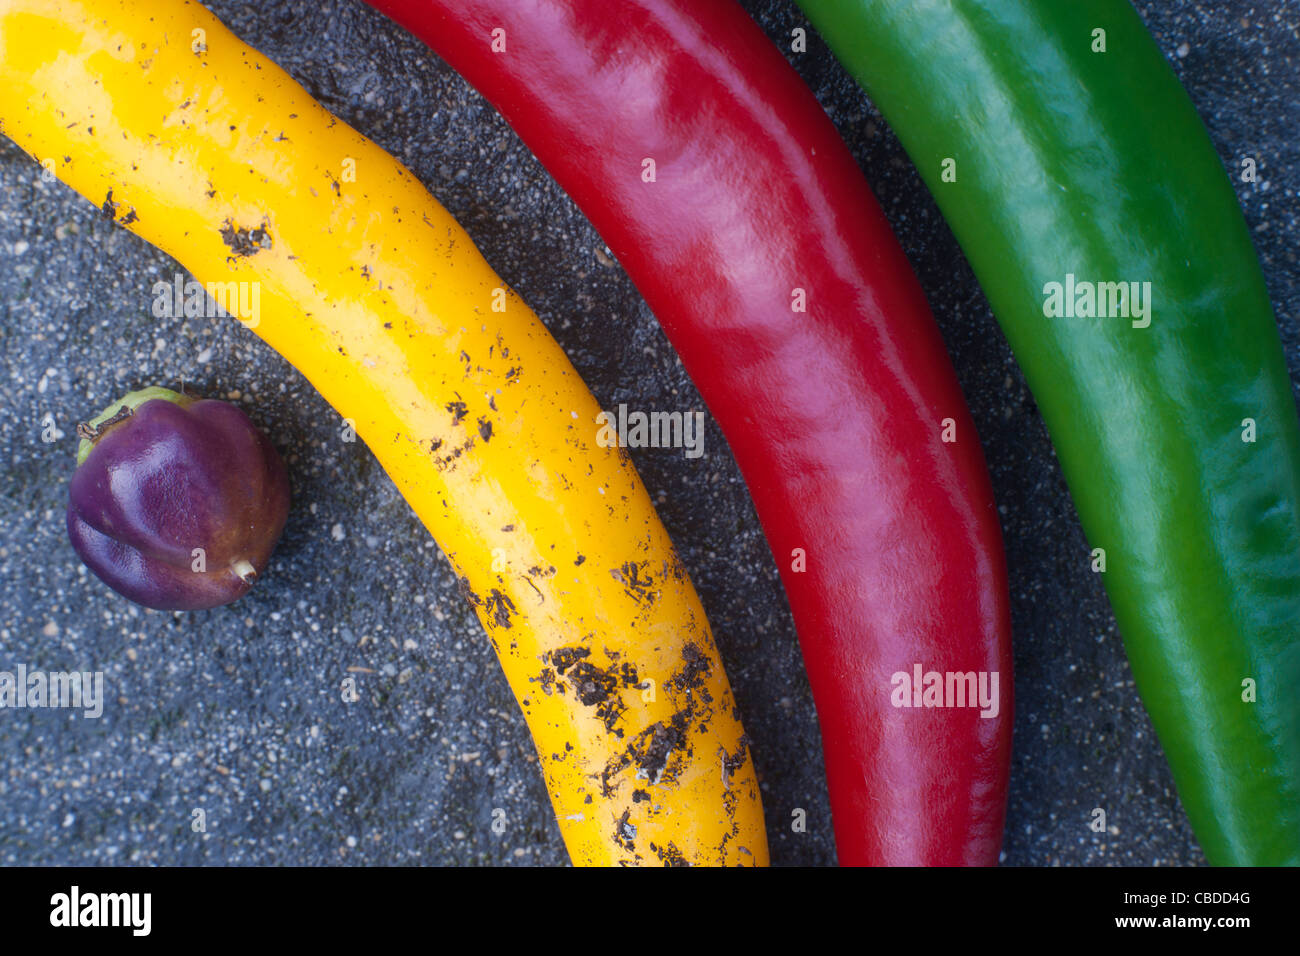 SONY DSC, Schiefer 4 verschiedene farbige Chilischoten auf grauem Hintergrund, 3 lange Chilischoten, eine sphärische Chilischote Stockfoto